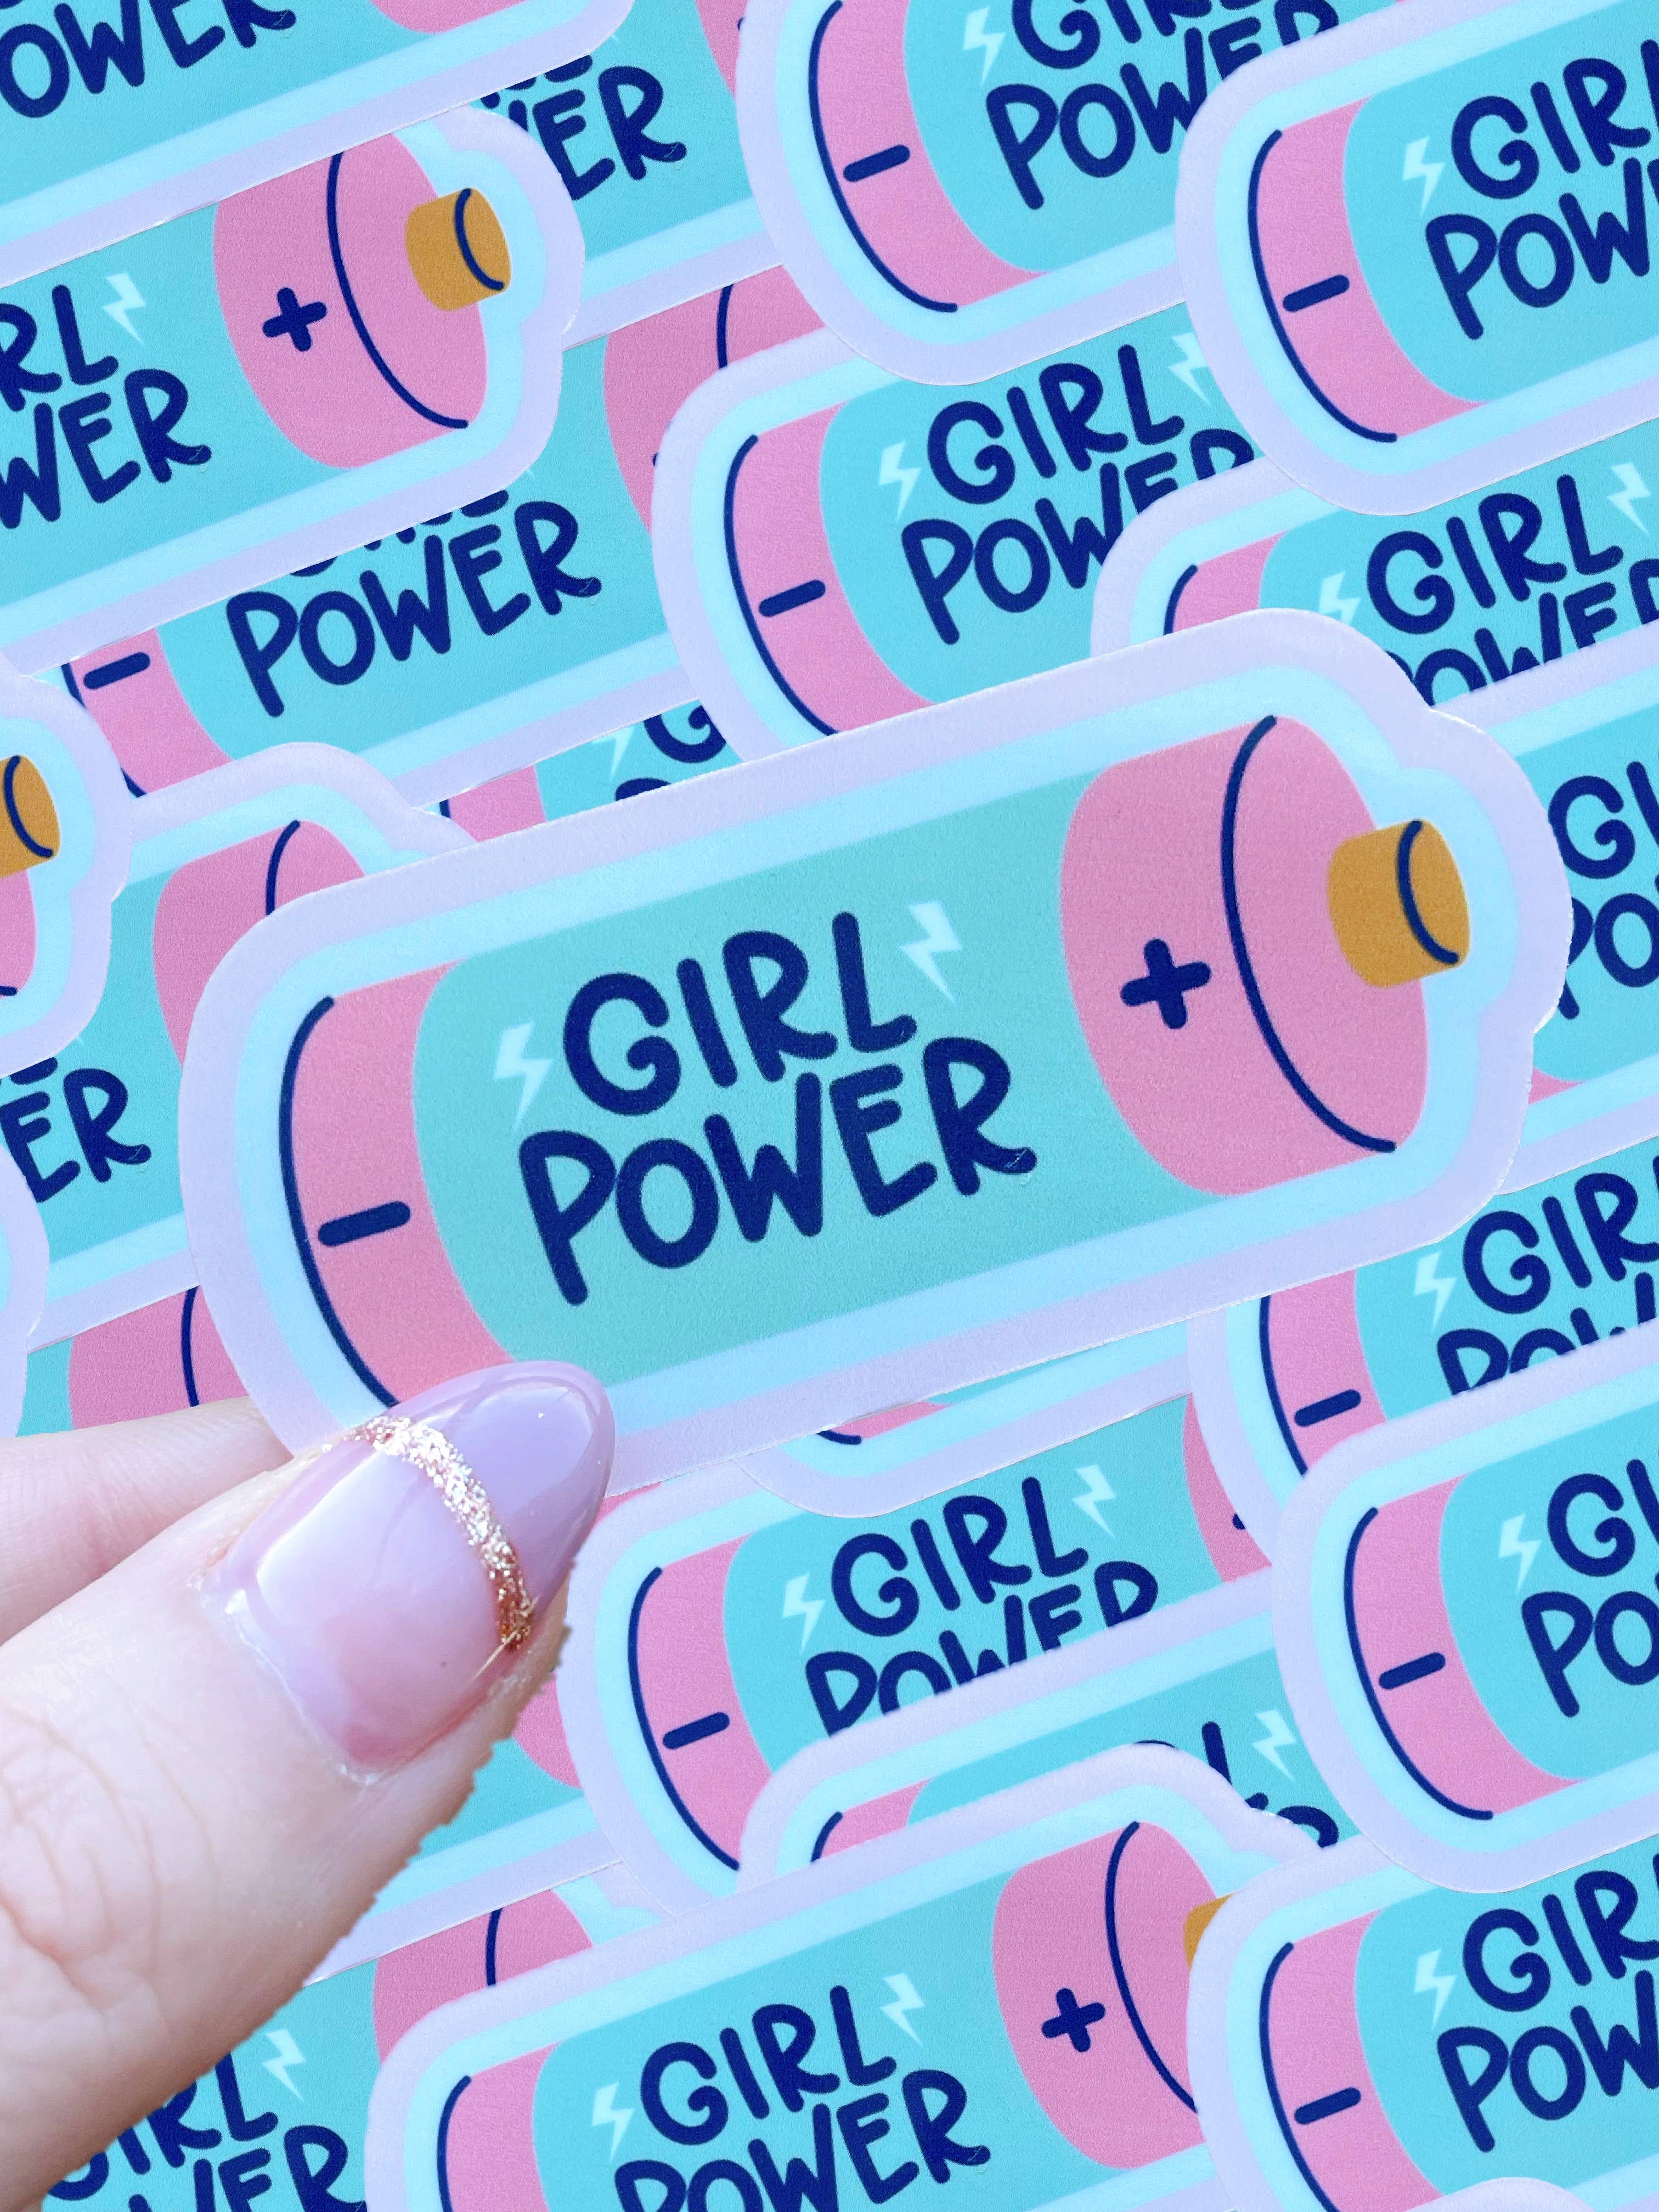 Girl Power waterproof sticker